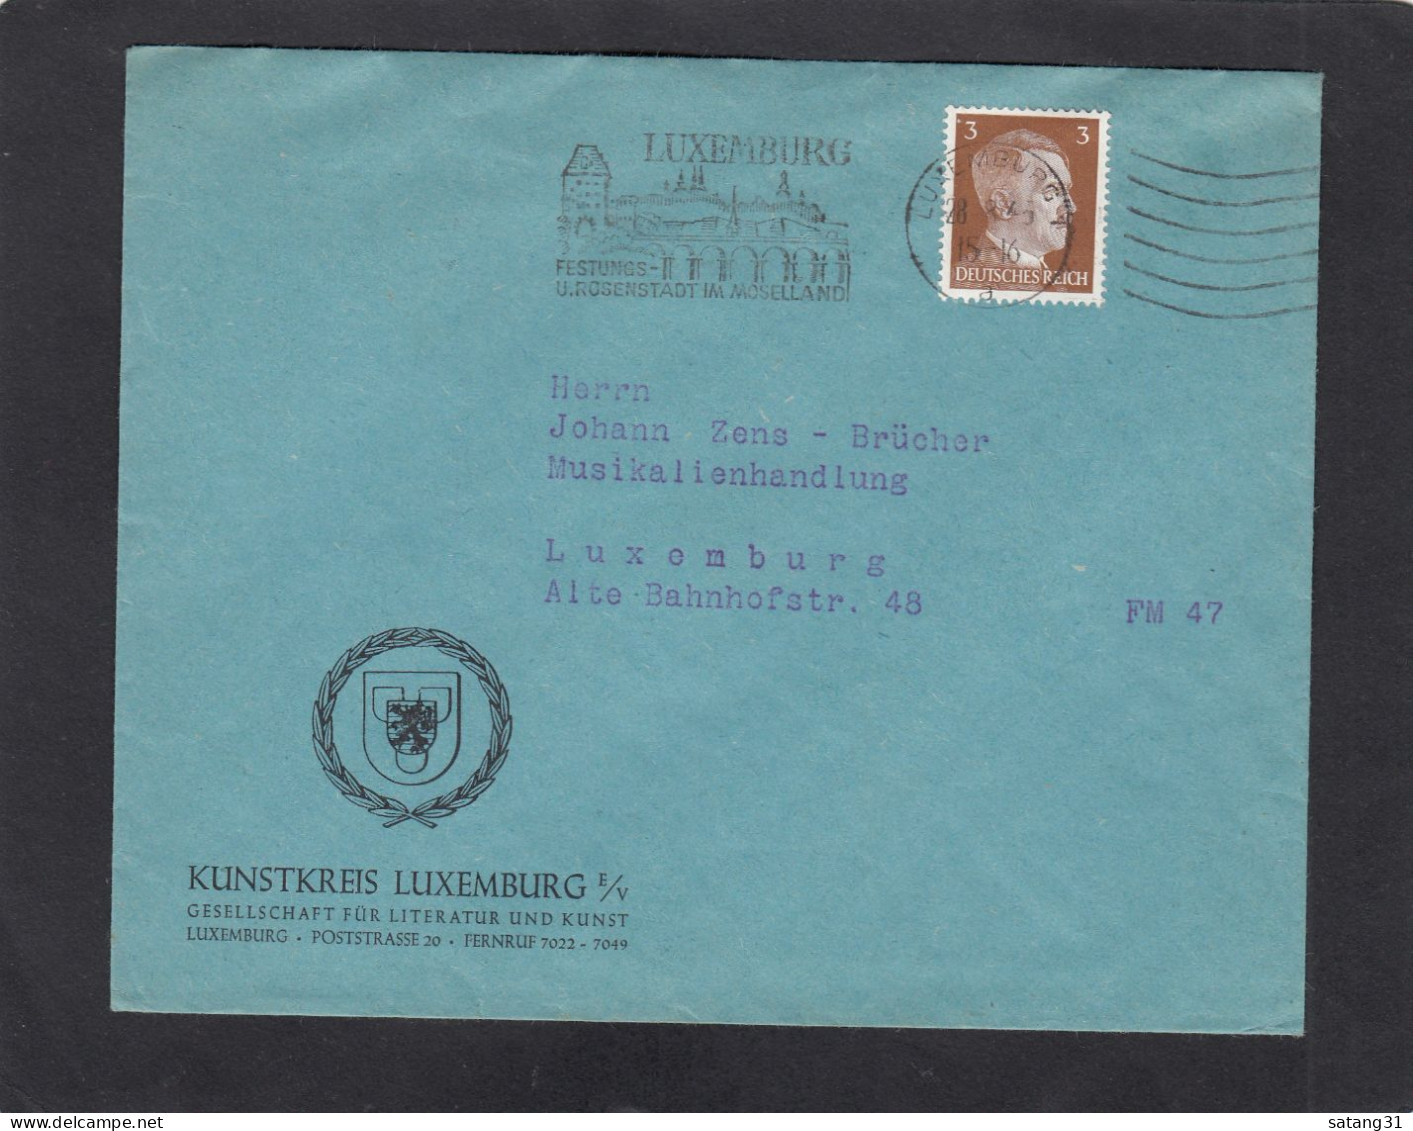 KUNSTKREIS LUXEMBURG,GESELLSCHAFT FÜR LITTERATUR UND KUNST,LUXEMBURG. - 1940-1944 Deutsche Besatzung